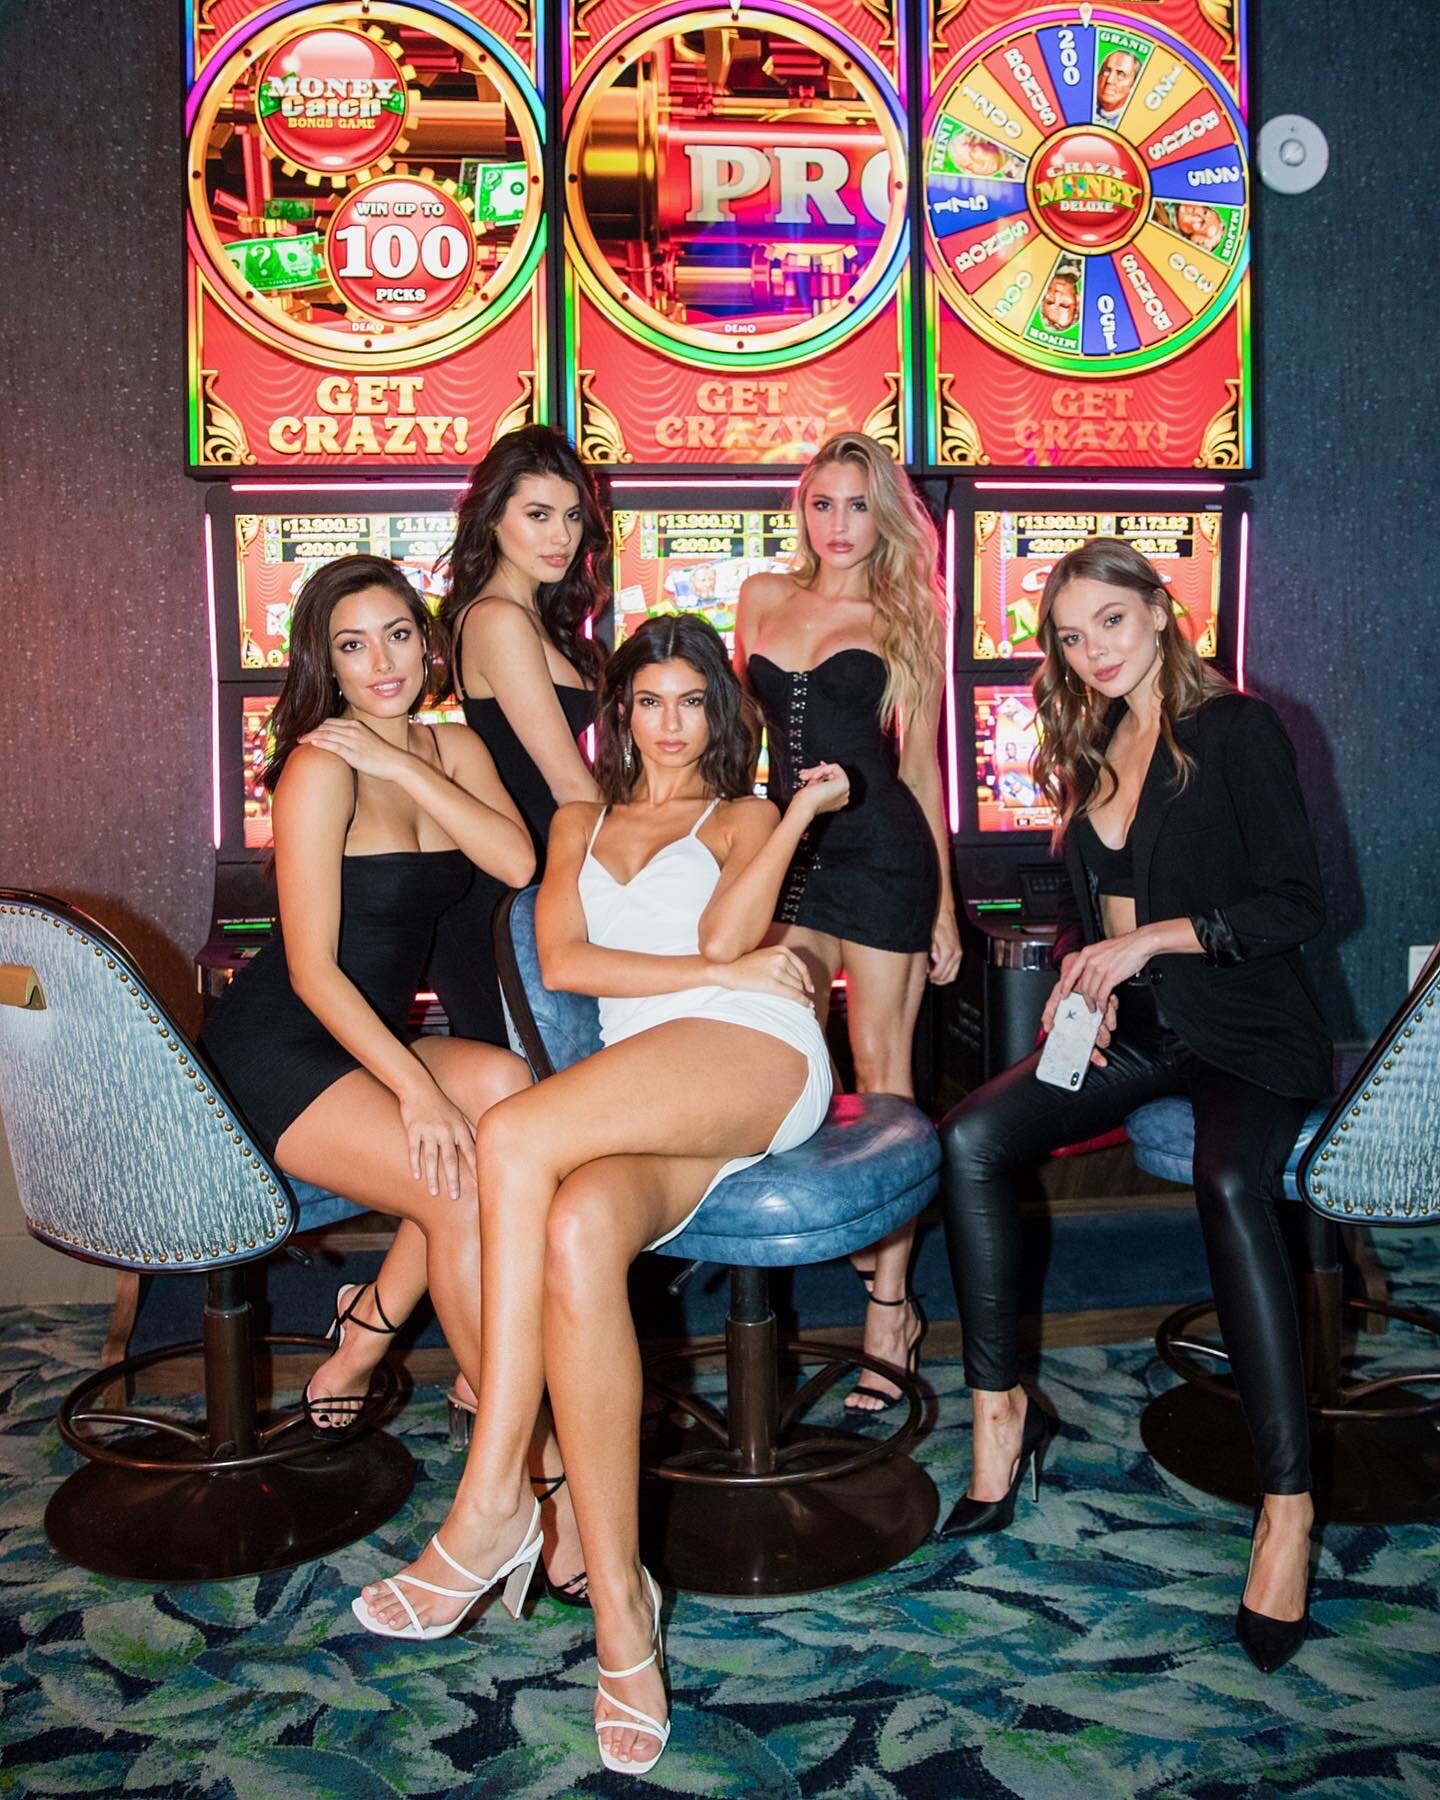 Las Vegas Pool Parties - Vegas Girls Night Out